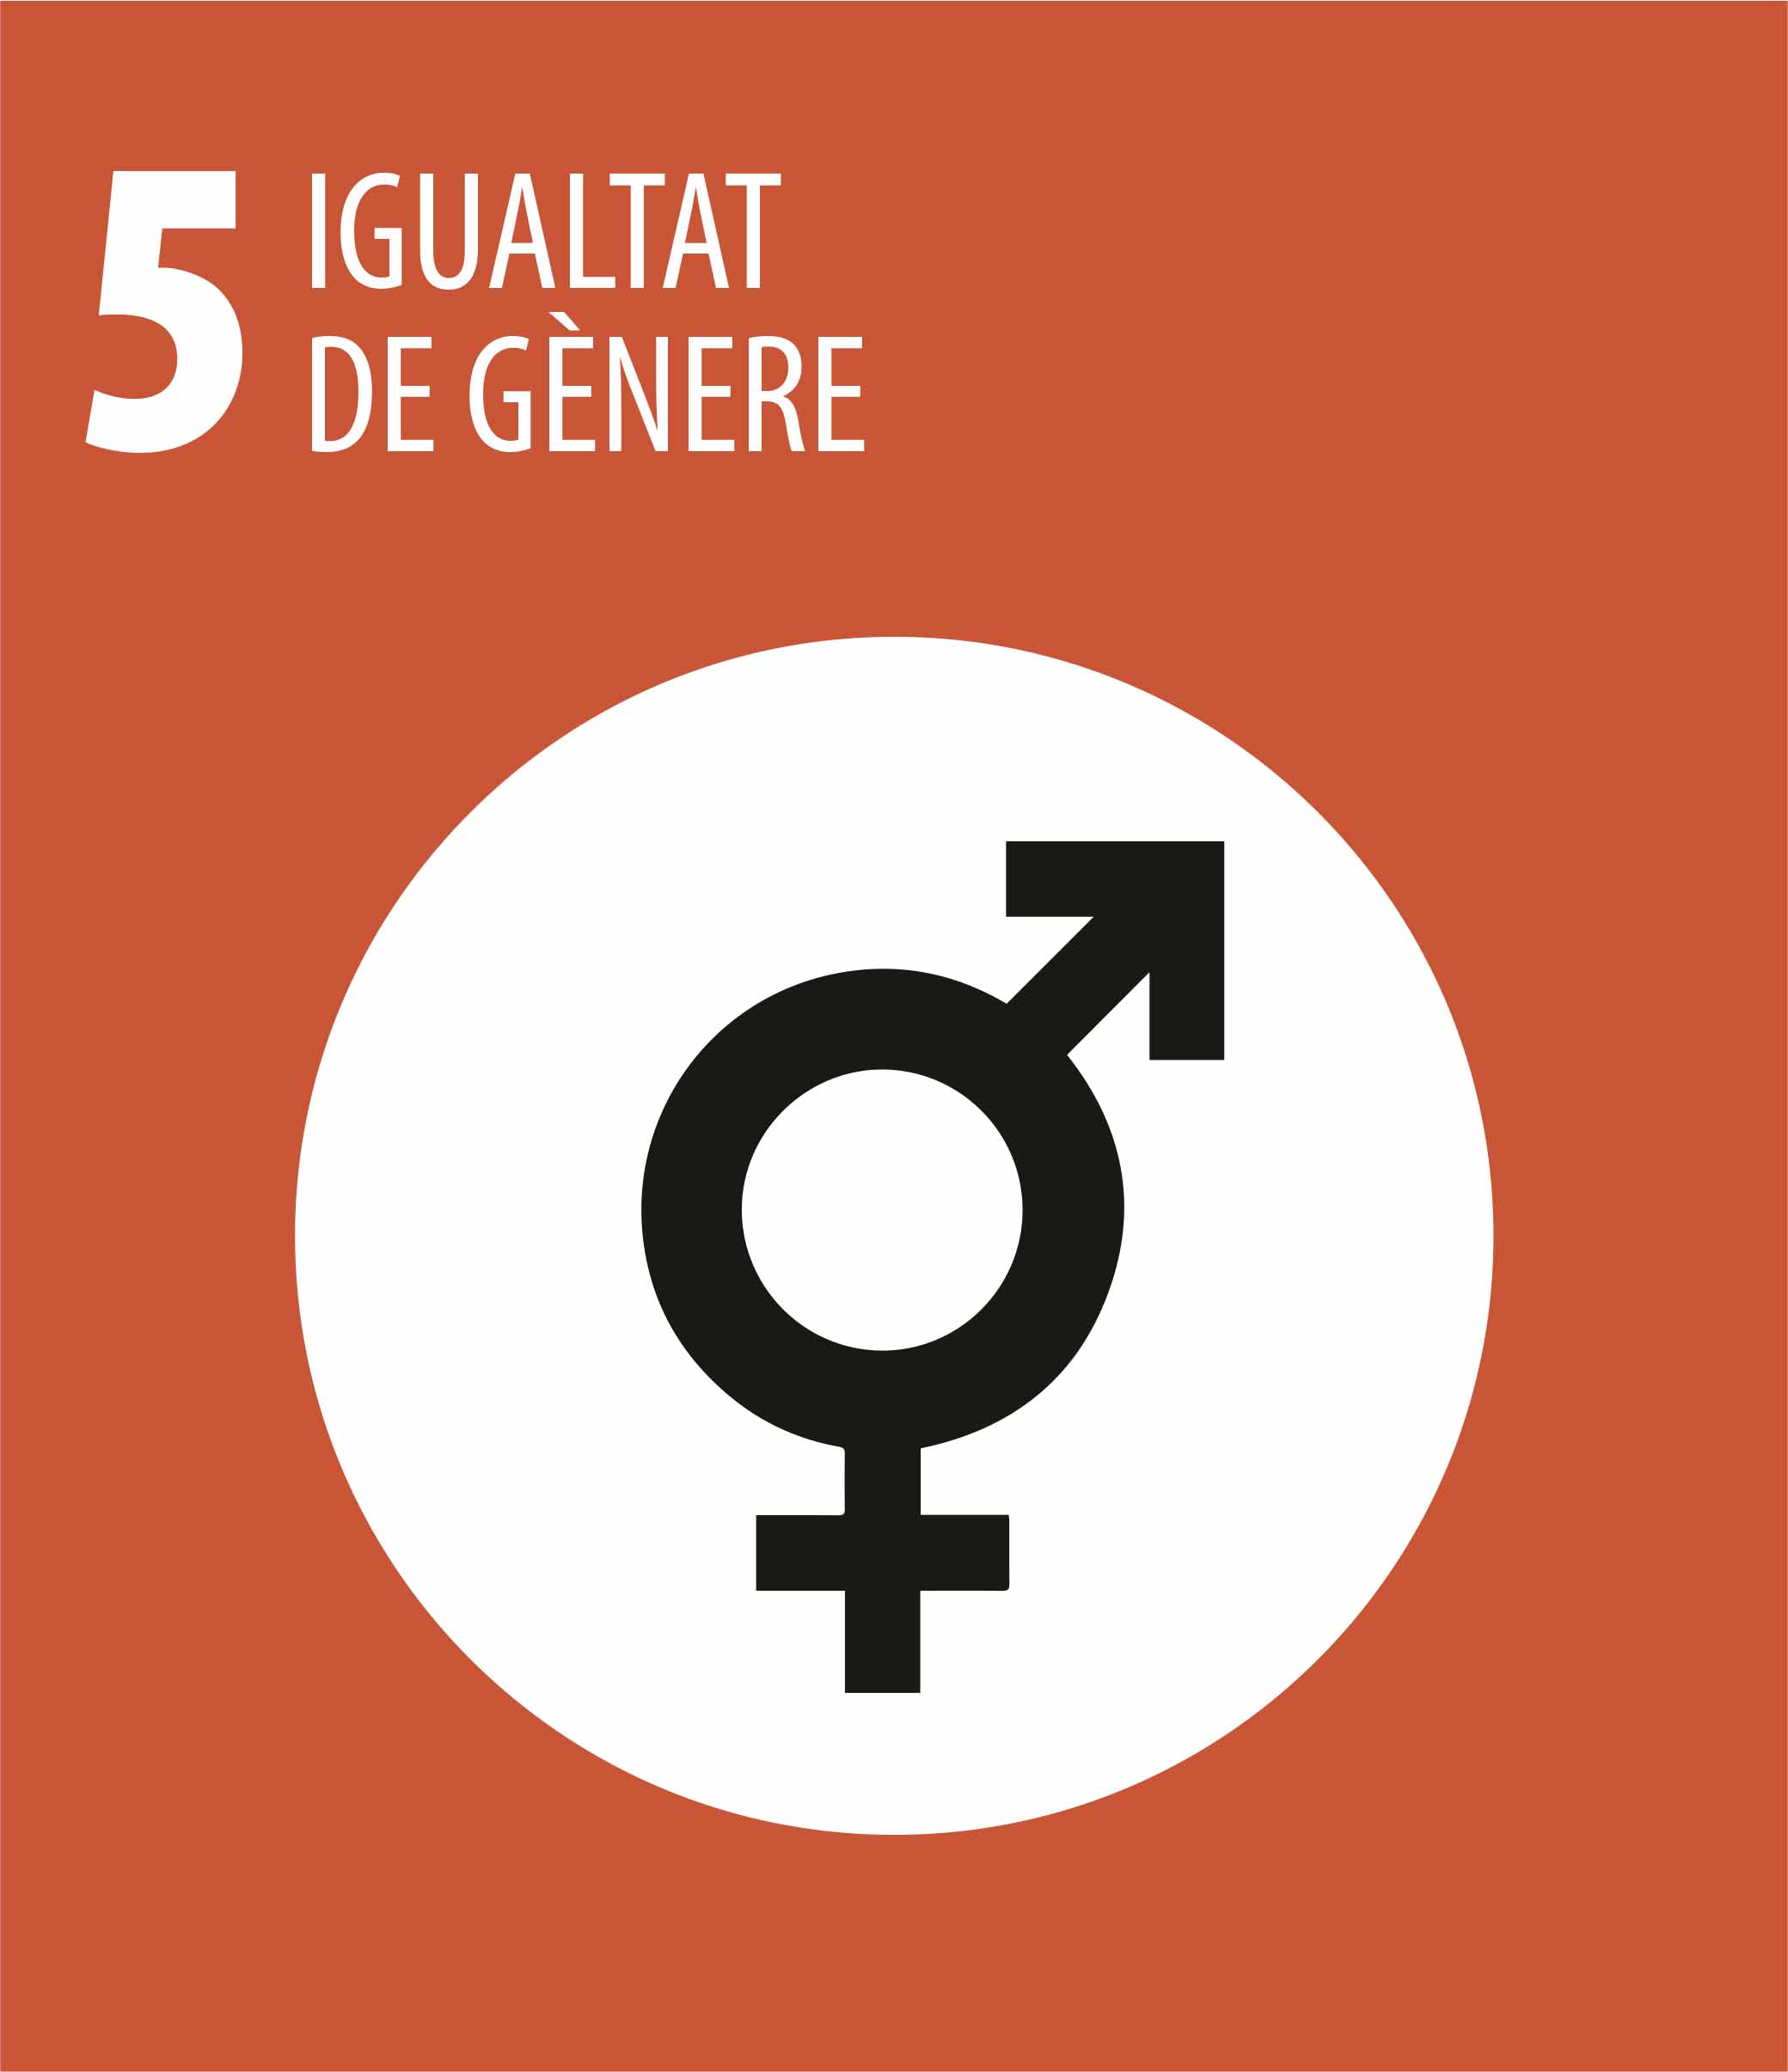 ODS 5 Igualtat de genere